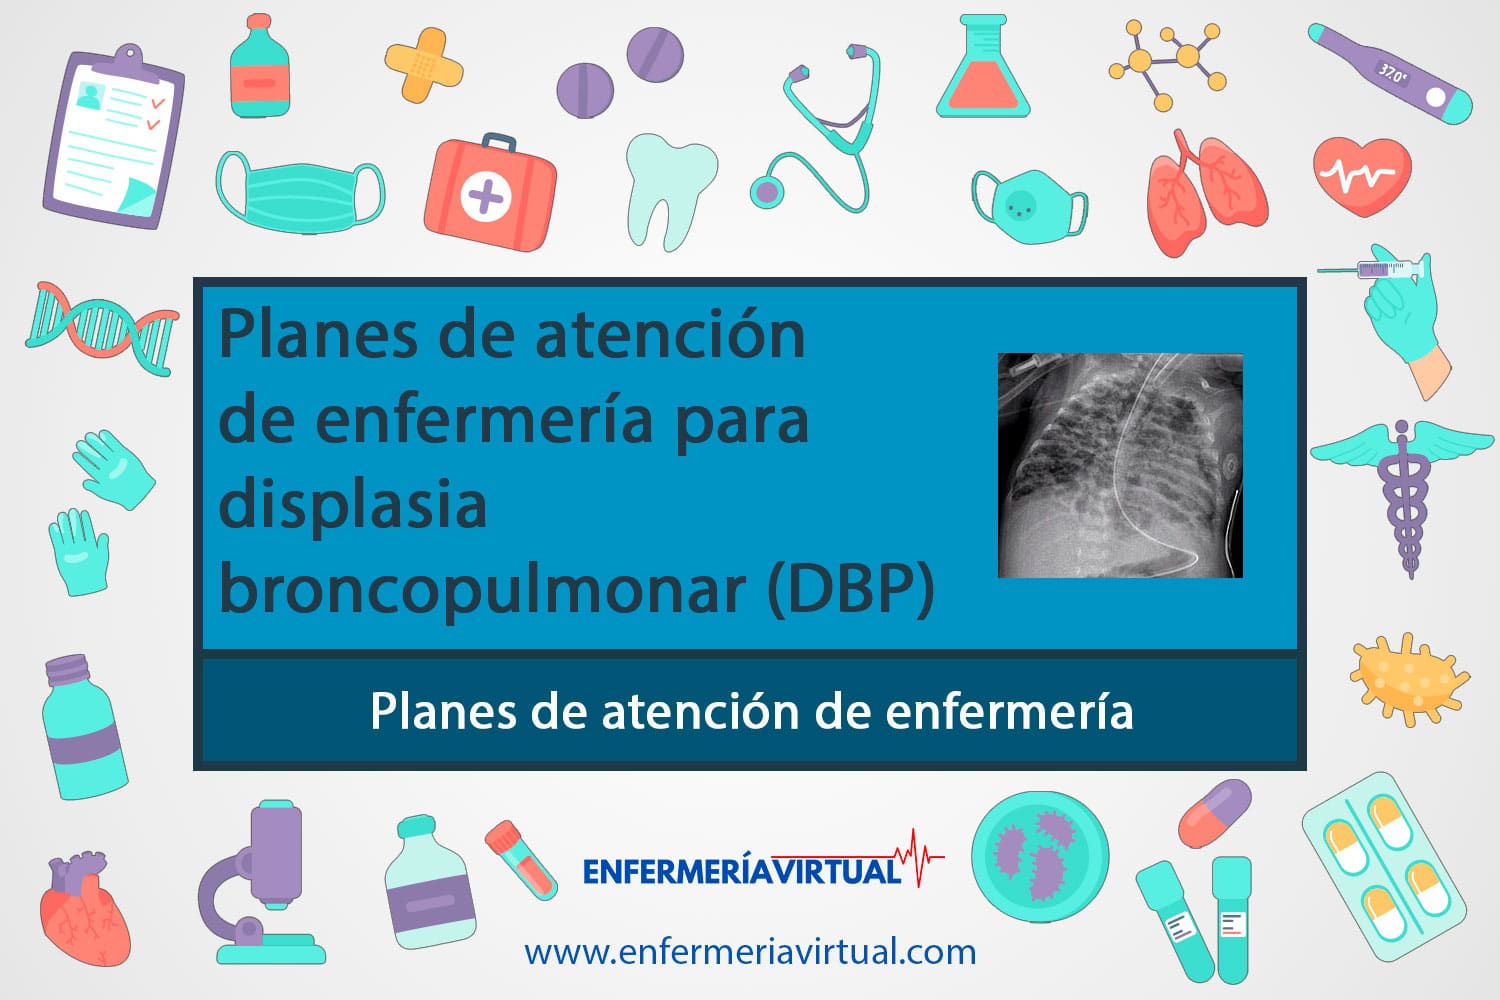 Planes de atención de enfermería para displasia broncopulmonar (DBP)